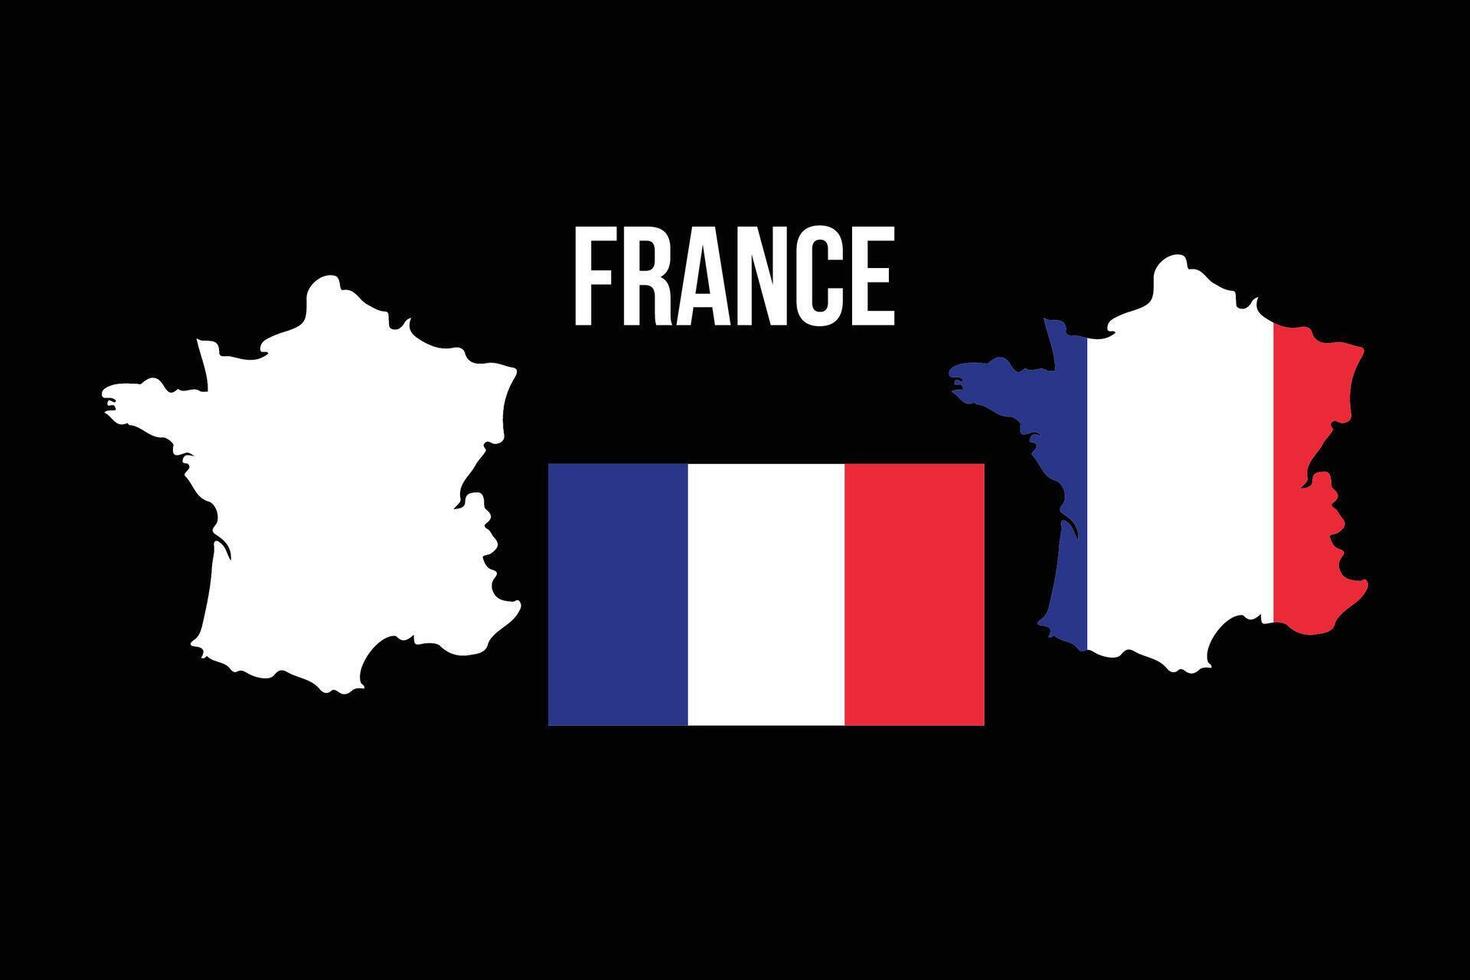 Francia bandera con mapa. francés bandera aislado en el mapa. vector silueta ilustración. europeo país.